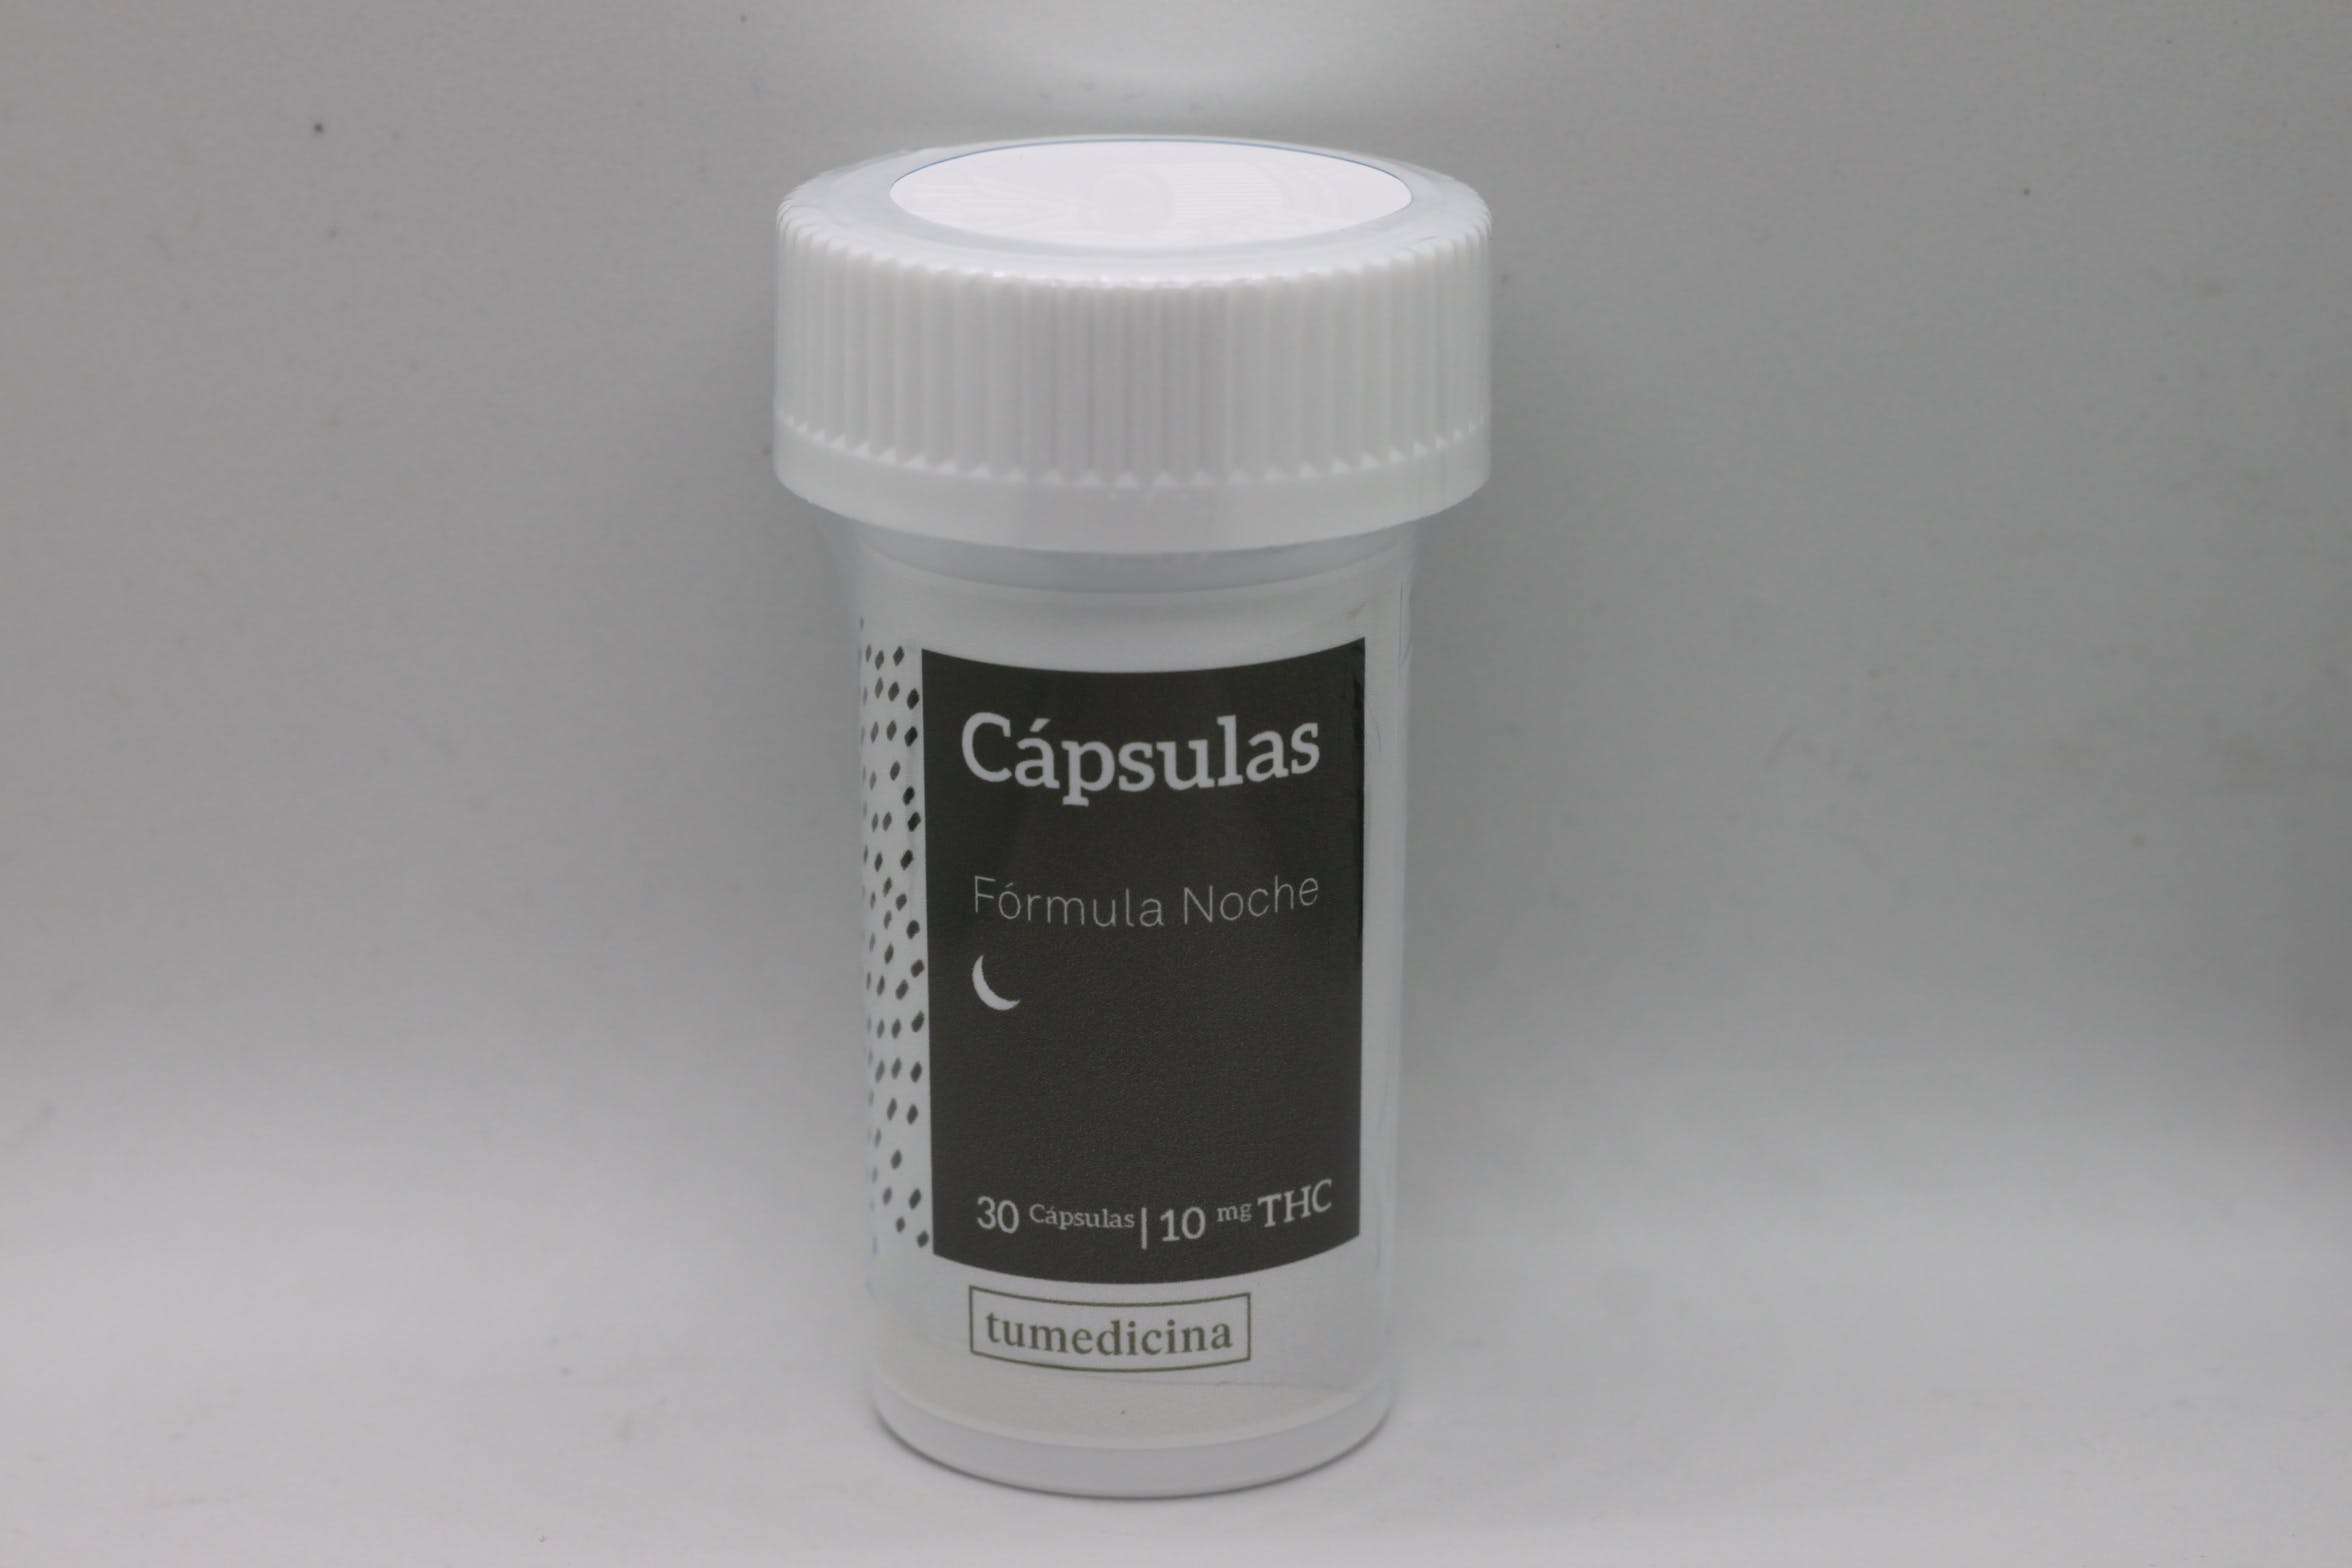 edible-cima-capsulas-night-10mg30-capsulas